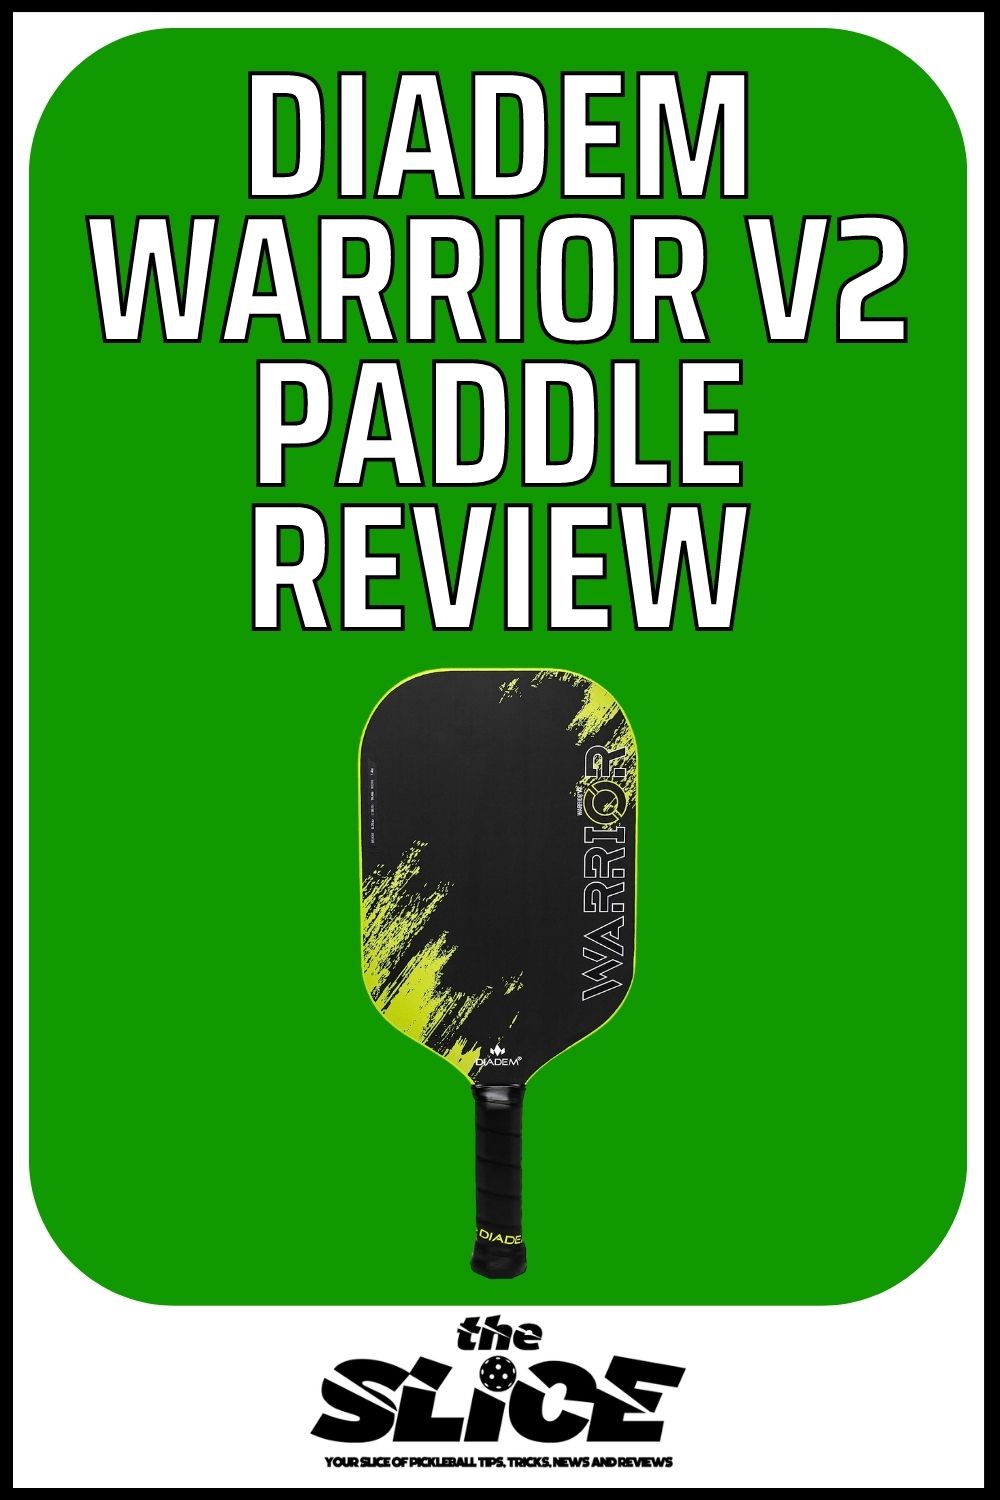 Diadem Warrior V2 Paddle Review (1)